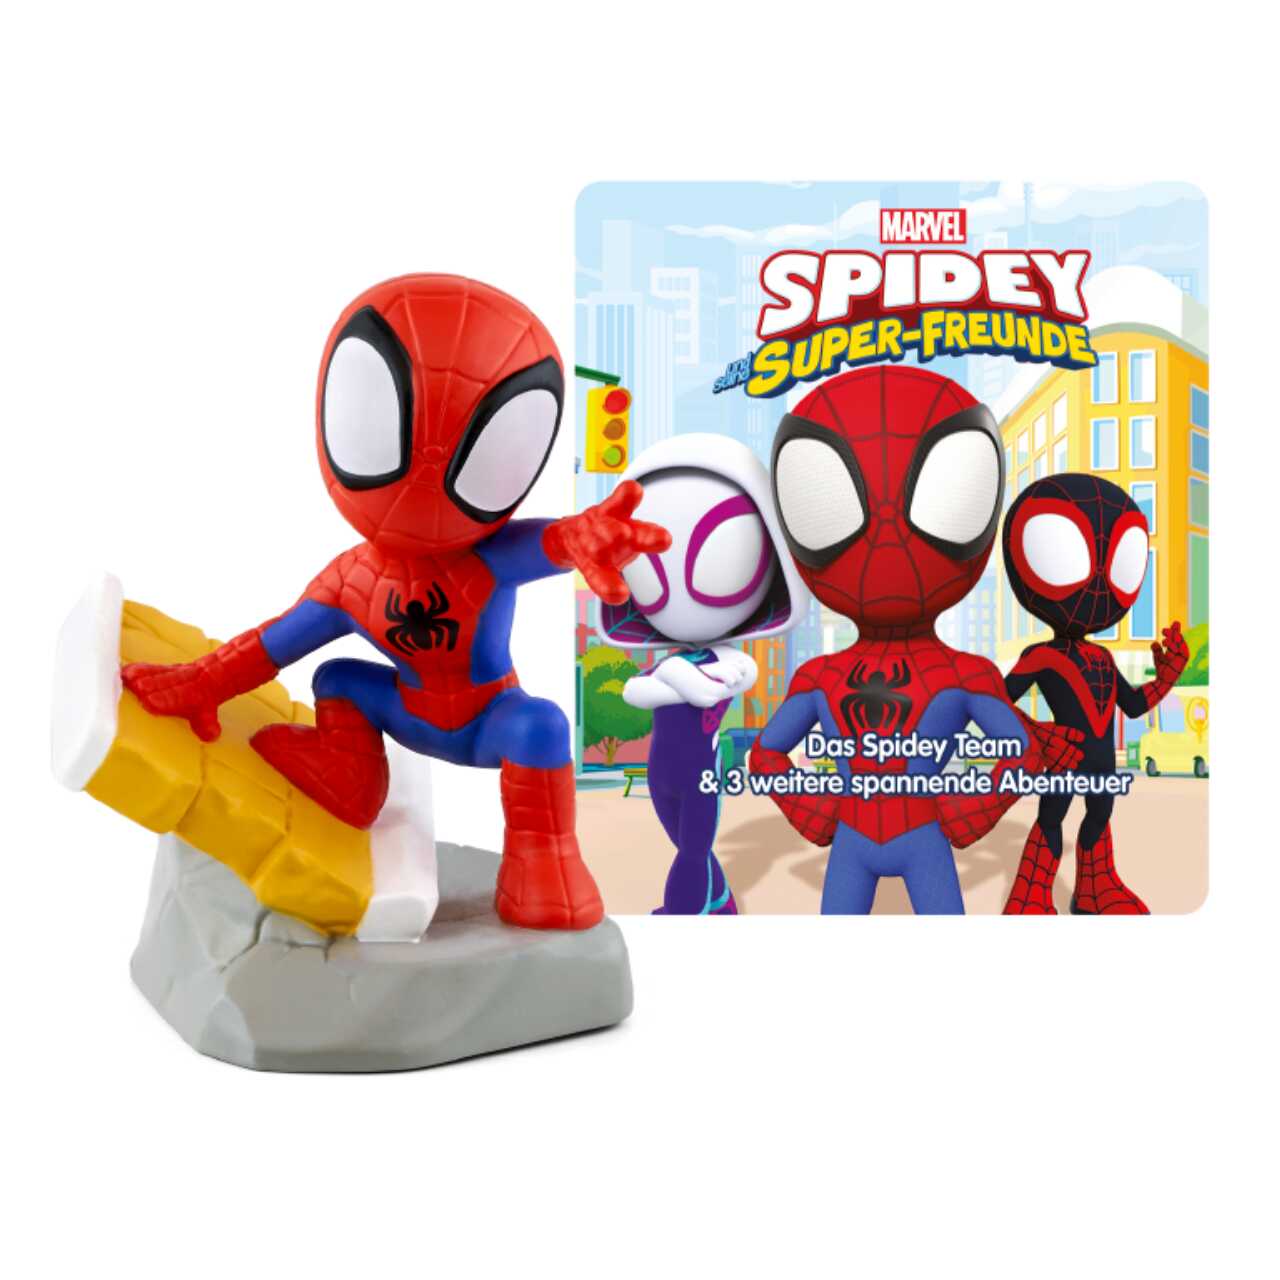 Produktbild TONIES 11000462 - Hörspiel - Marvel Spidey und seine Super-Freunde, Das Spidey Team